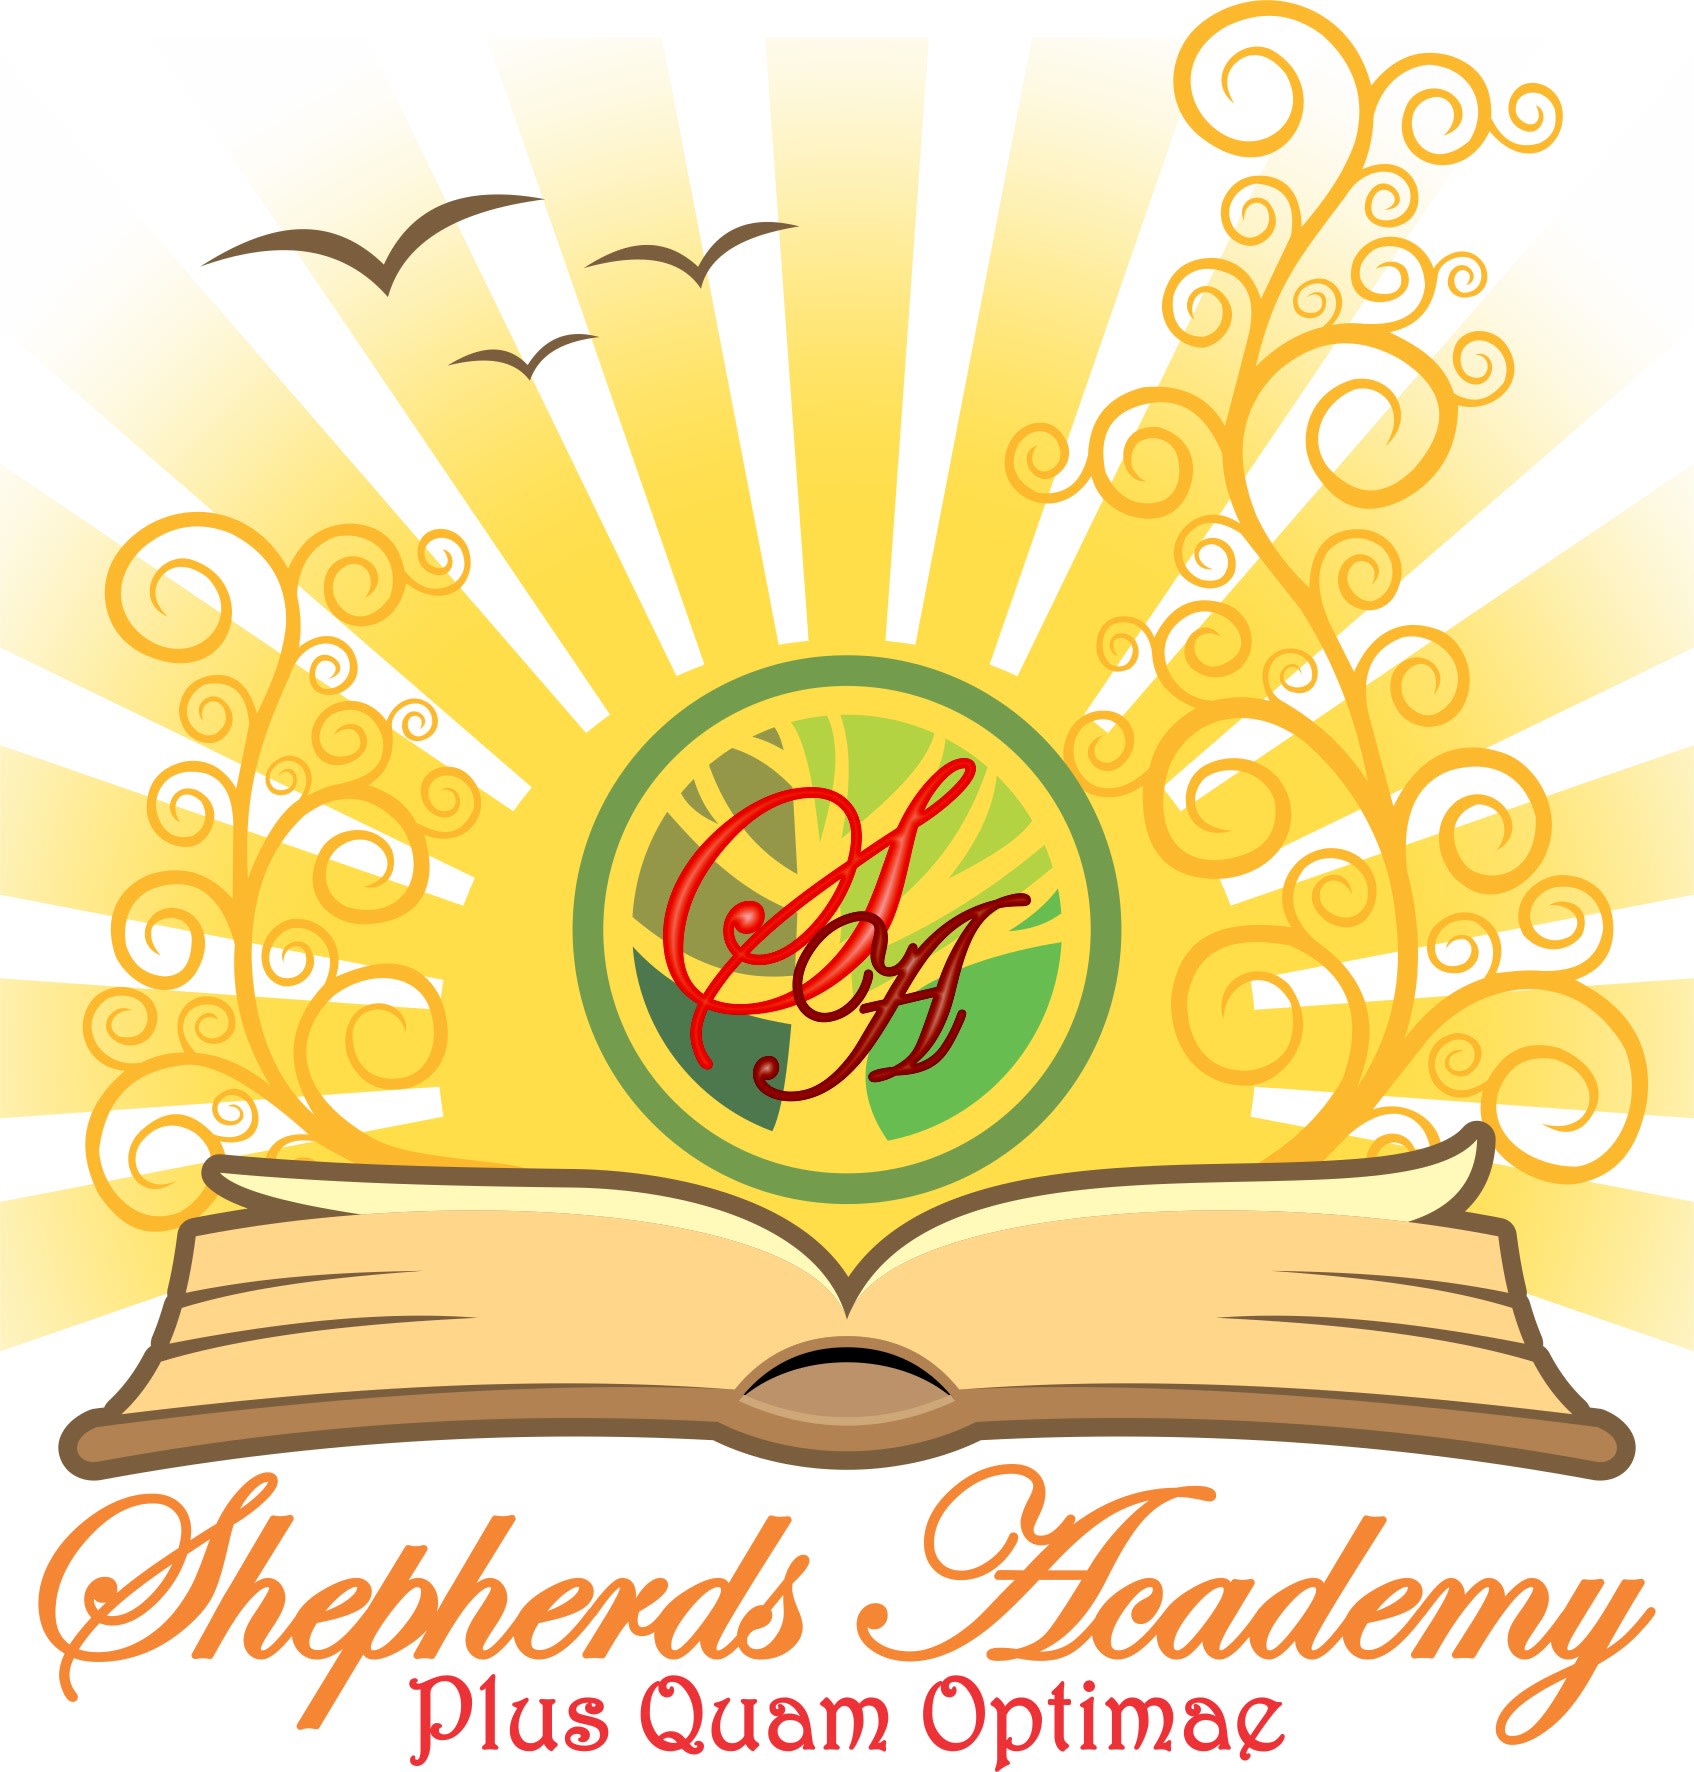 Shepherds Academy